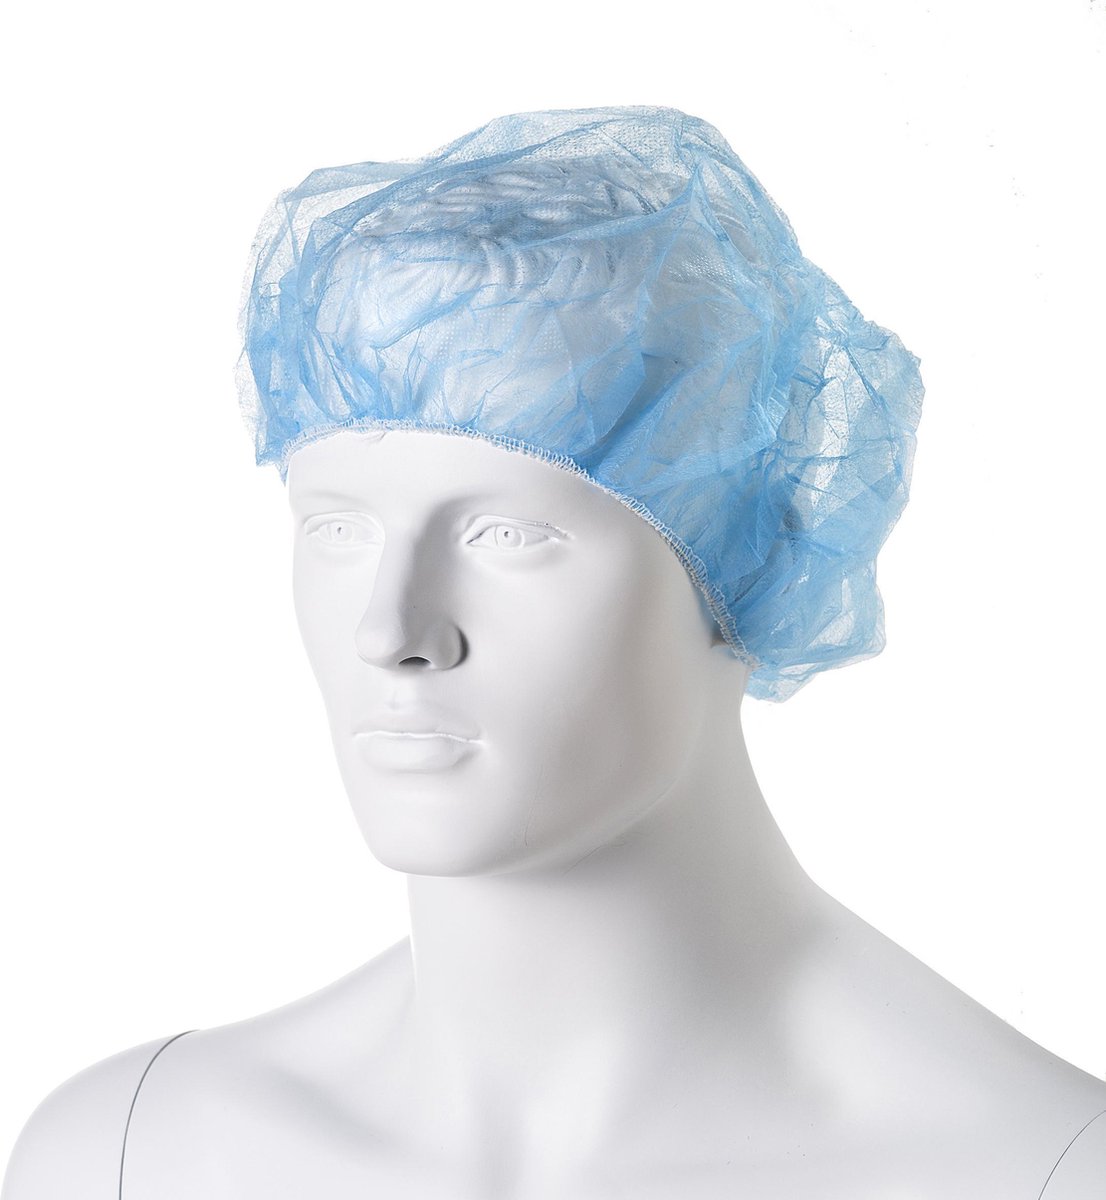 Haarnetjes - baret model - bescherming voor haren - wegwerp - 100 stuks pp non woven